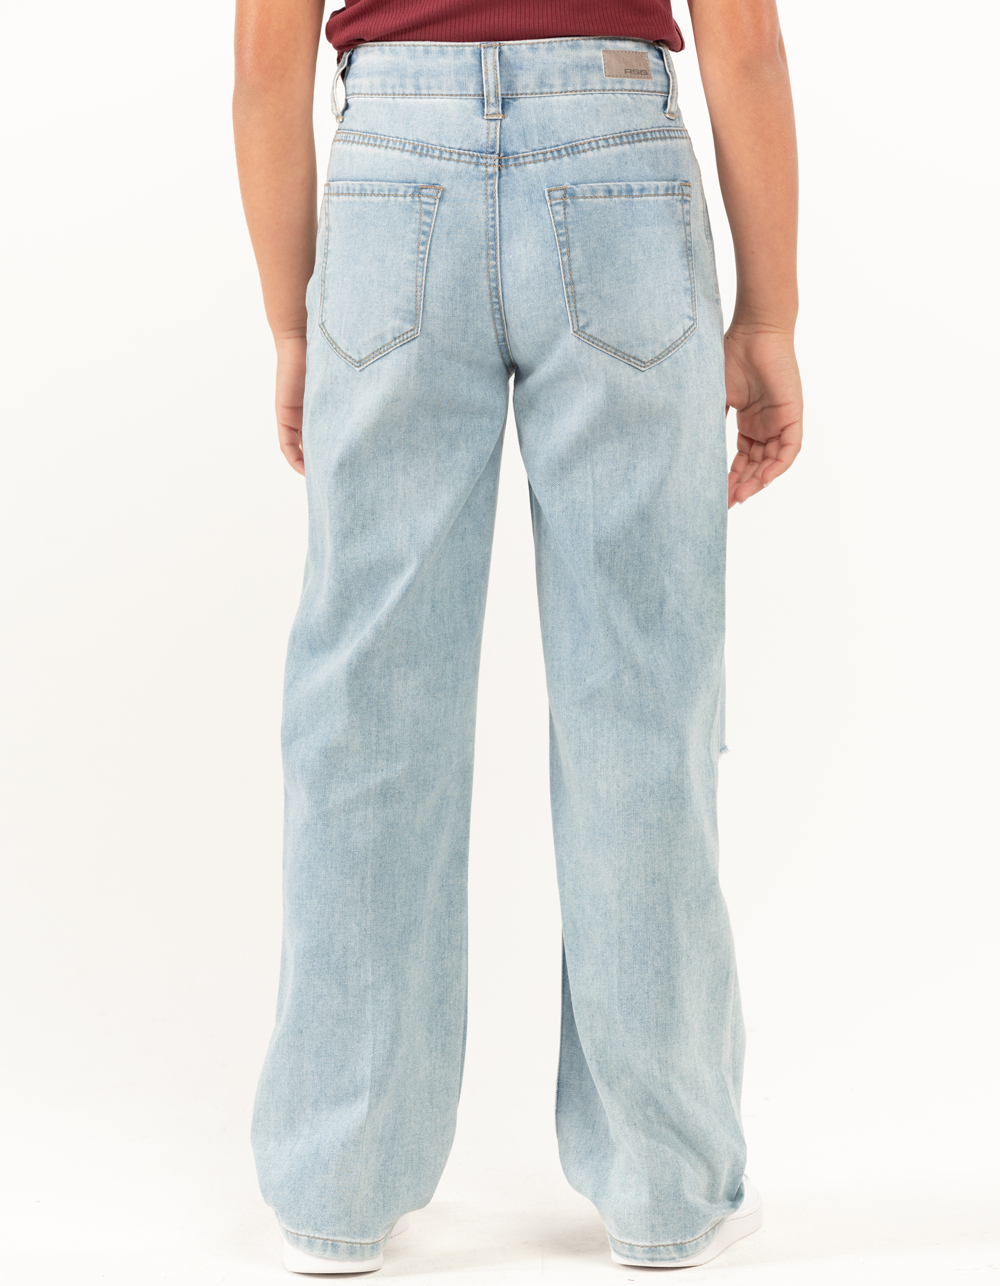 Jeans People Poop Their Pants | lupon.gov.ph